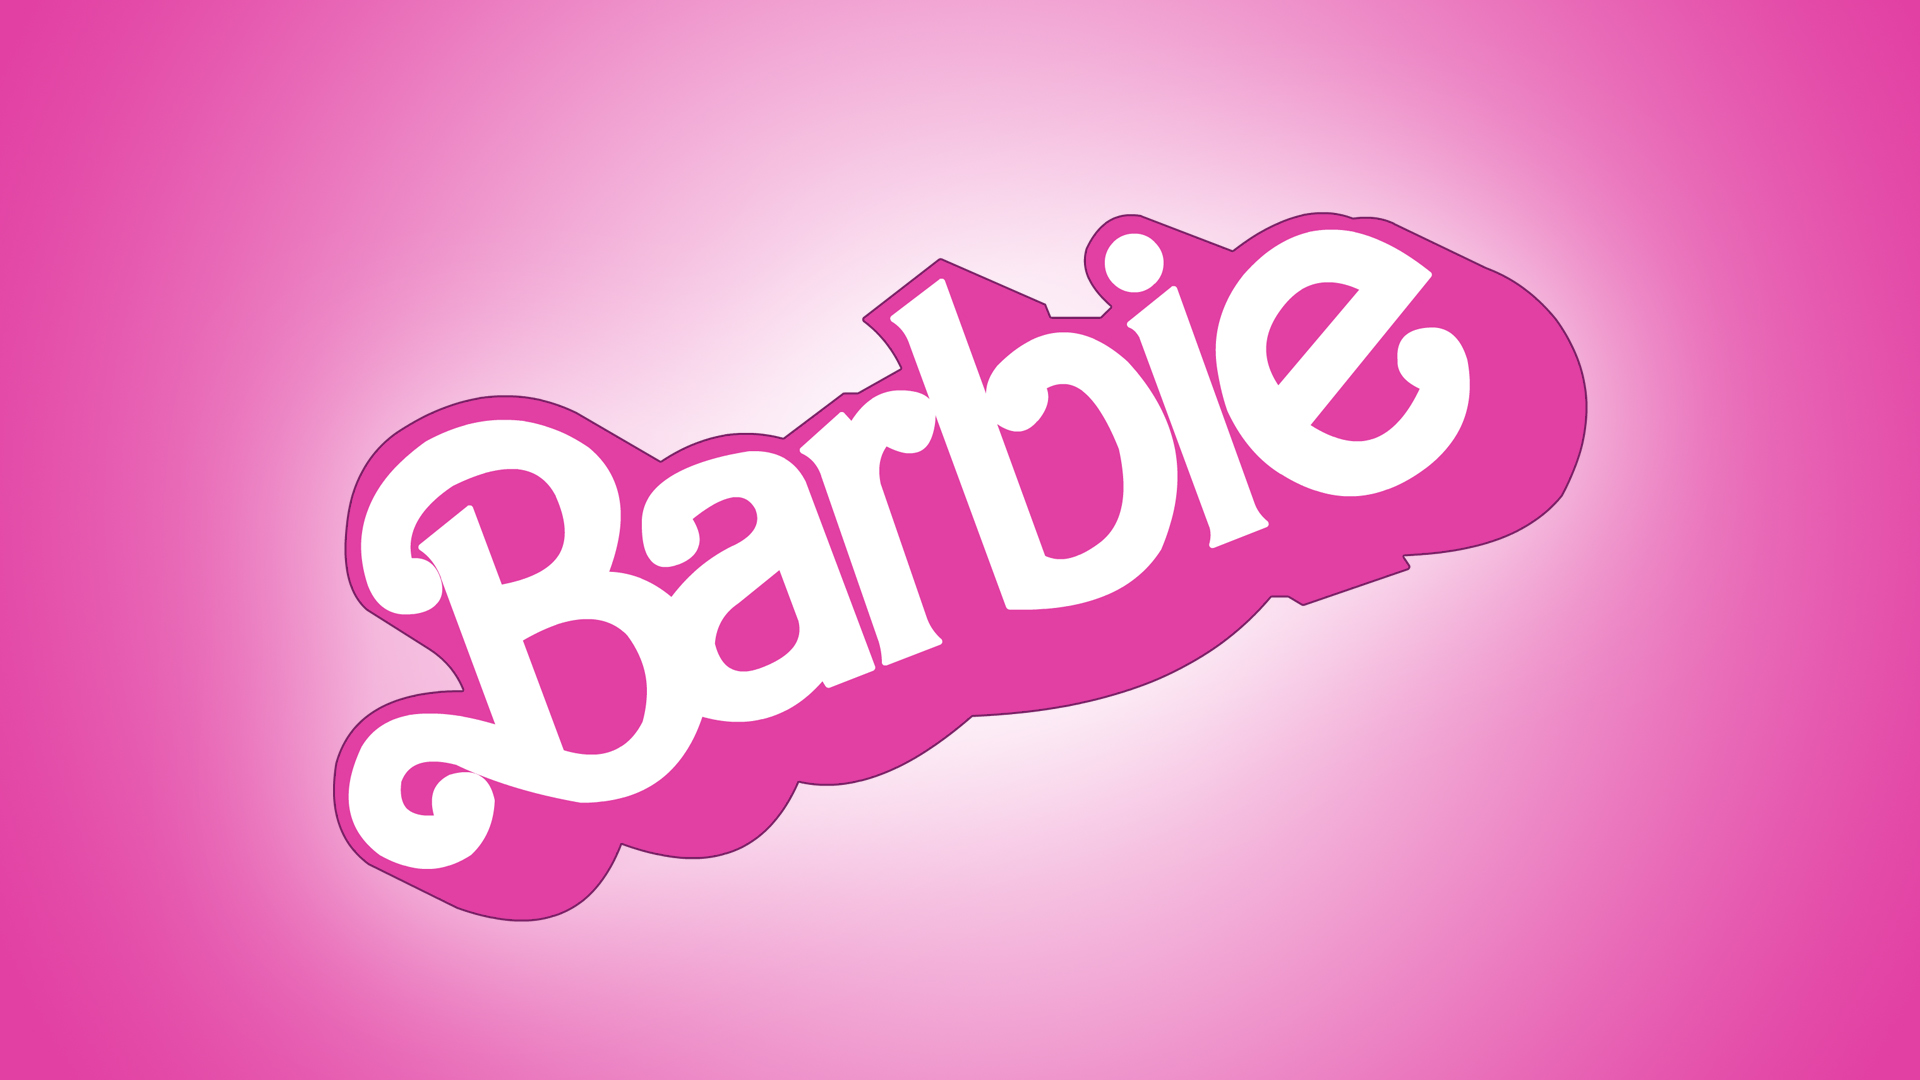 Barbie Brand Logo 1920x1080